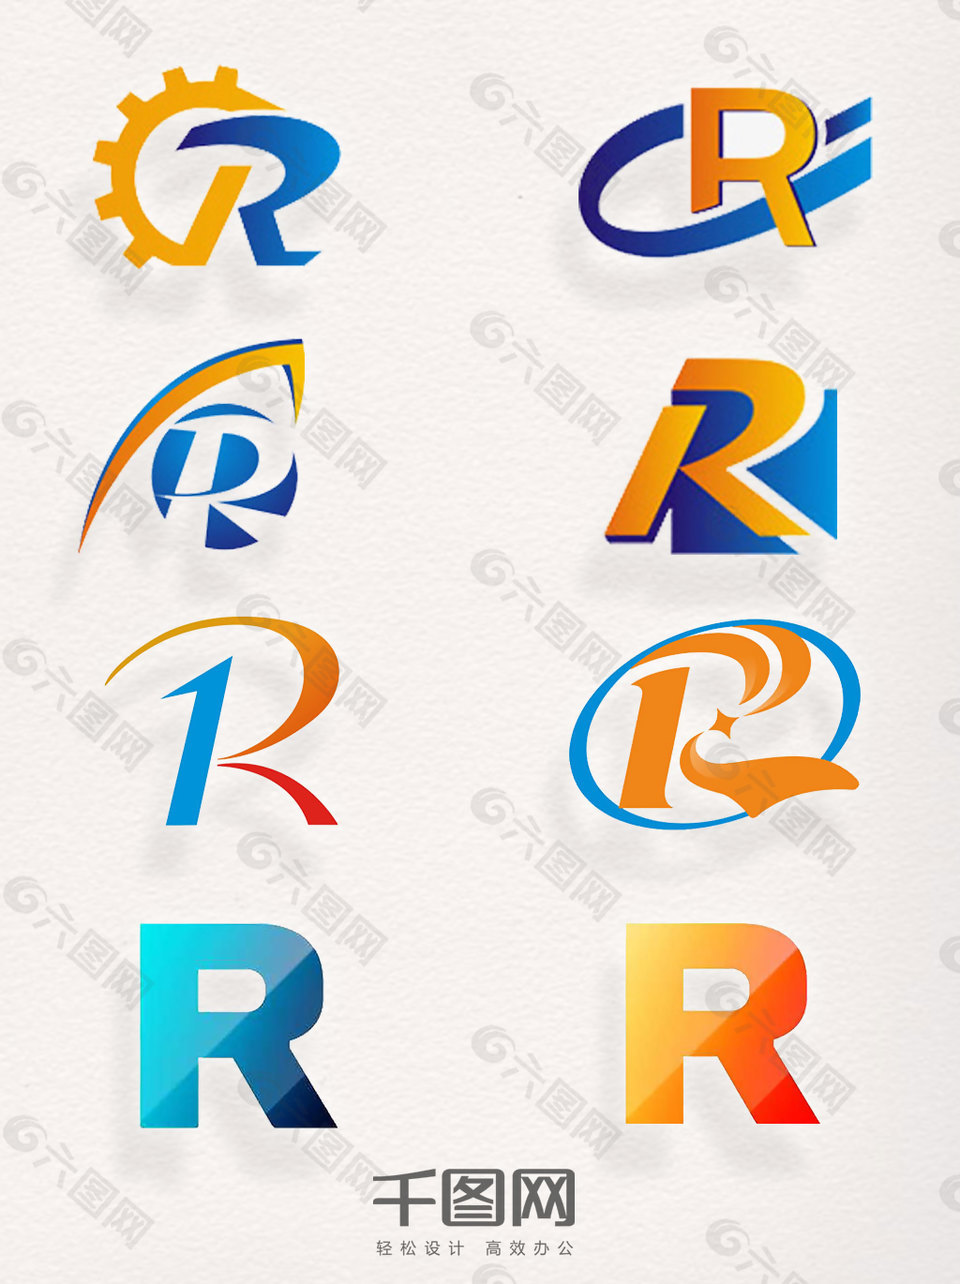 注册商标R素材艺术字母元素创意装饰集合